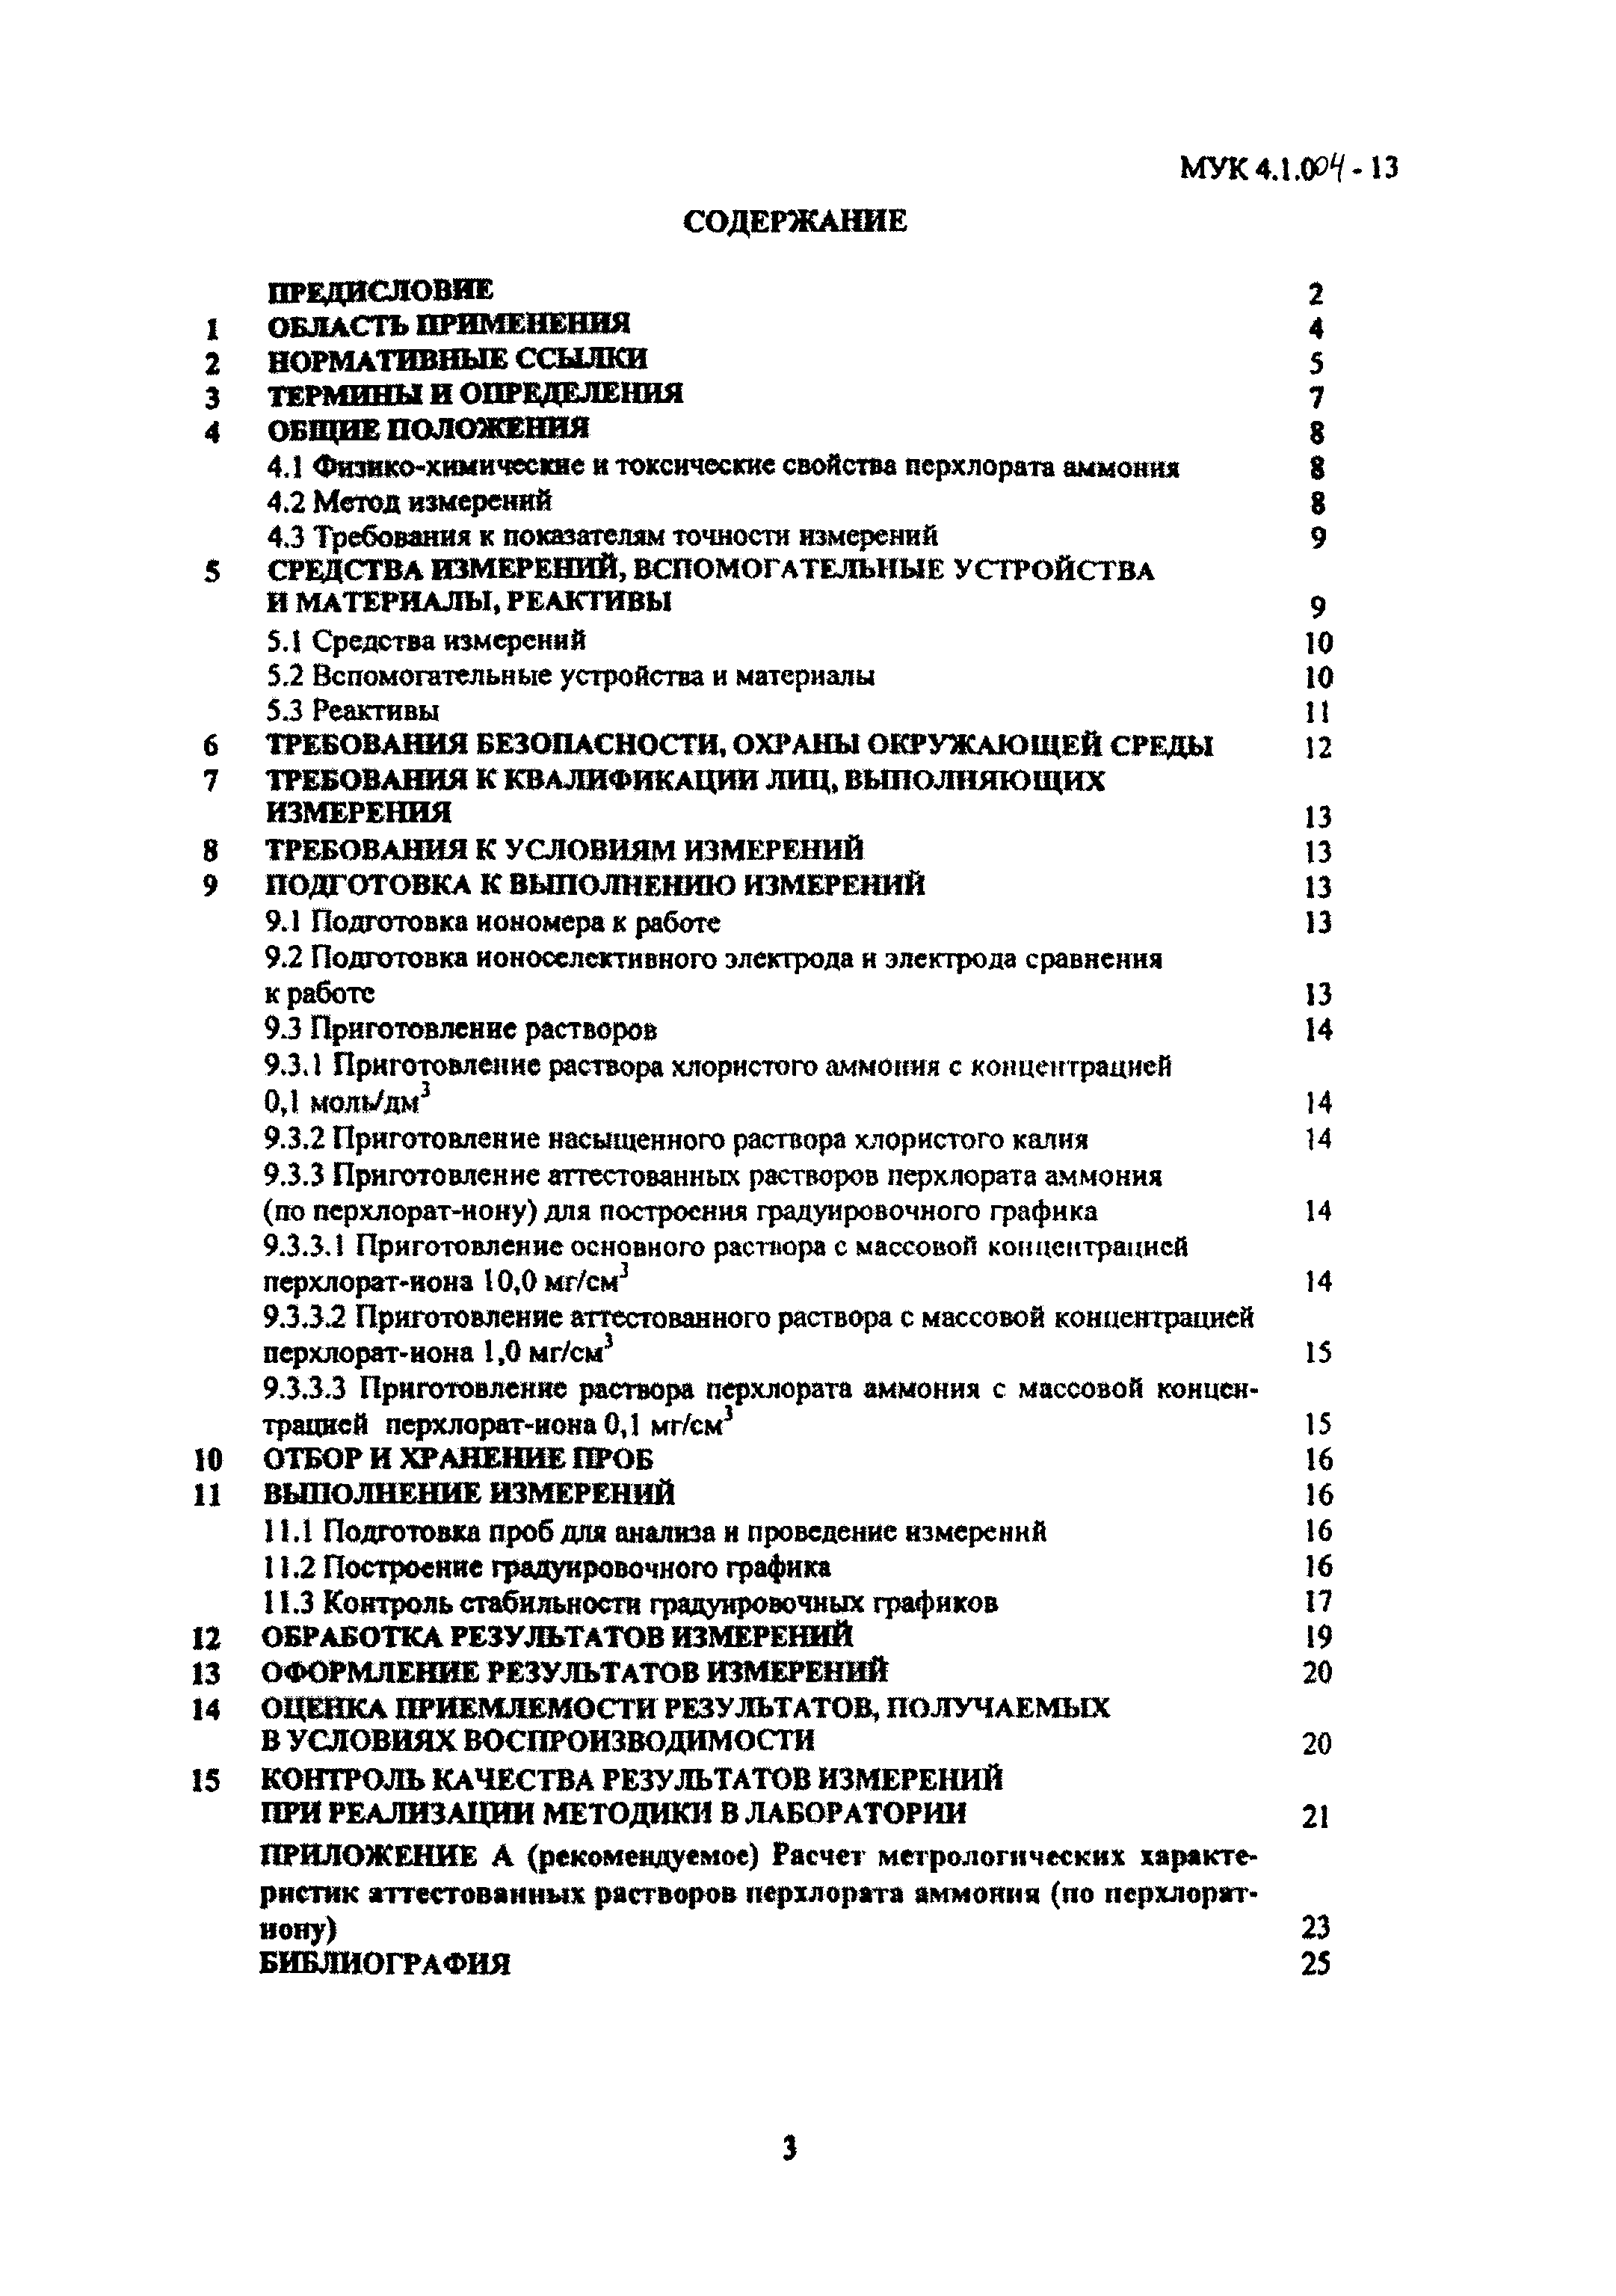 МУК 4.1.004-13